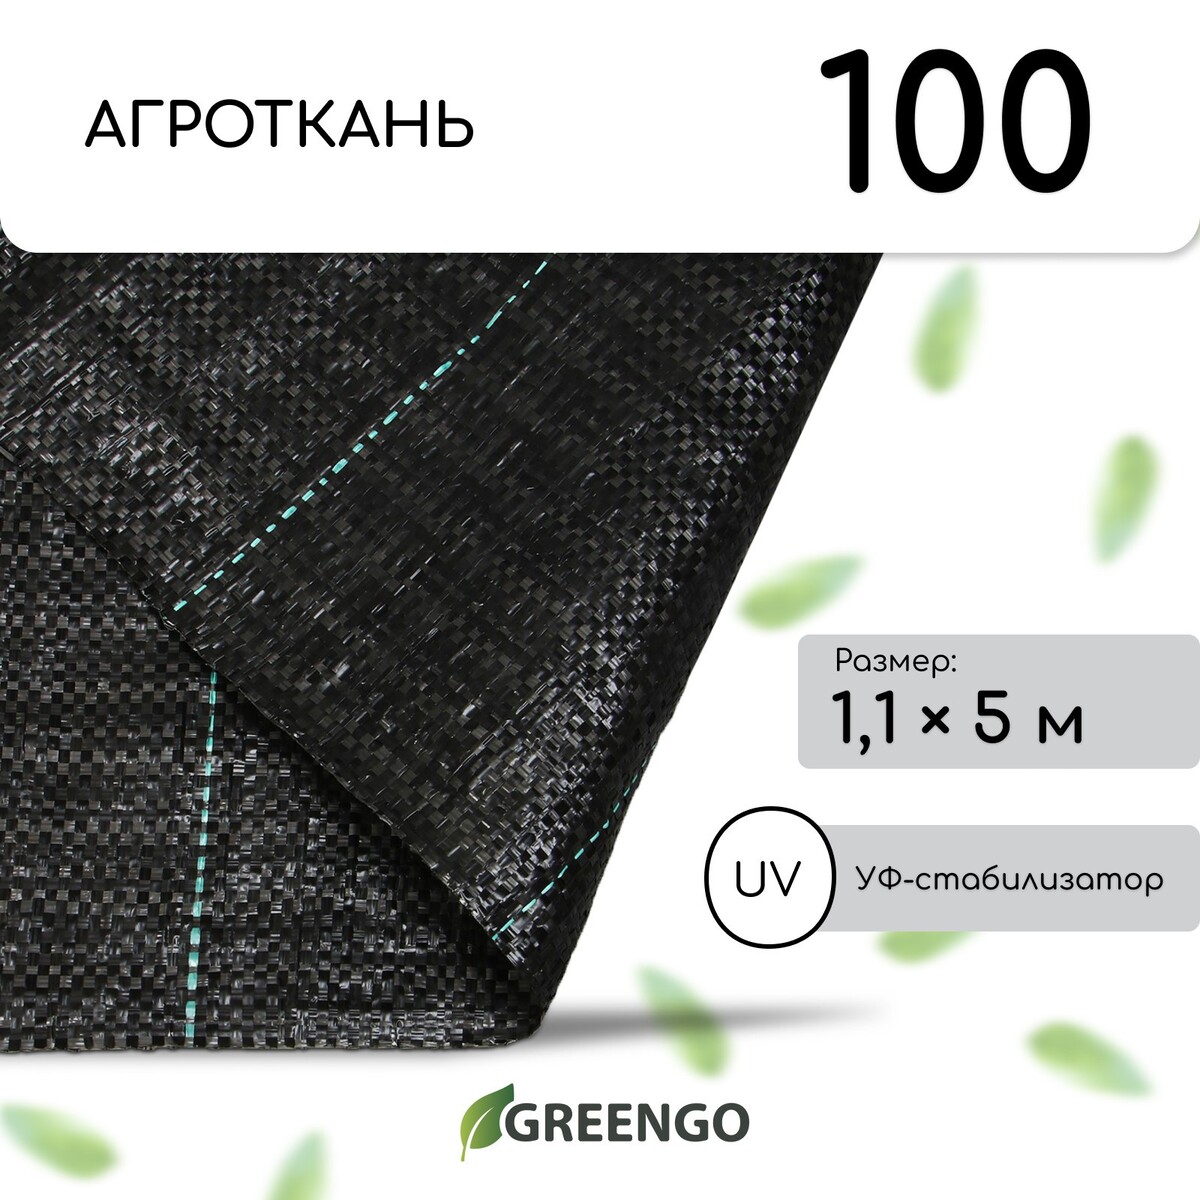 Агроткань застилочная, с разметкой, 5 × 1,1 м, плотность 100 г/м², полипропилен, greengo, эконом 50% Greengo